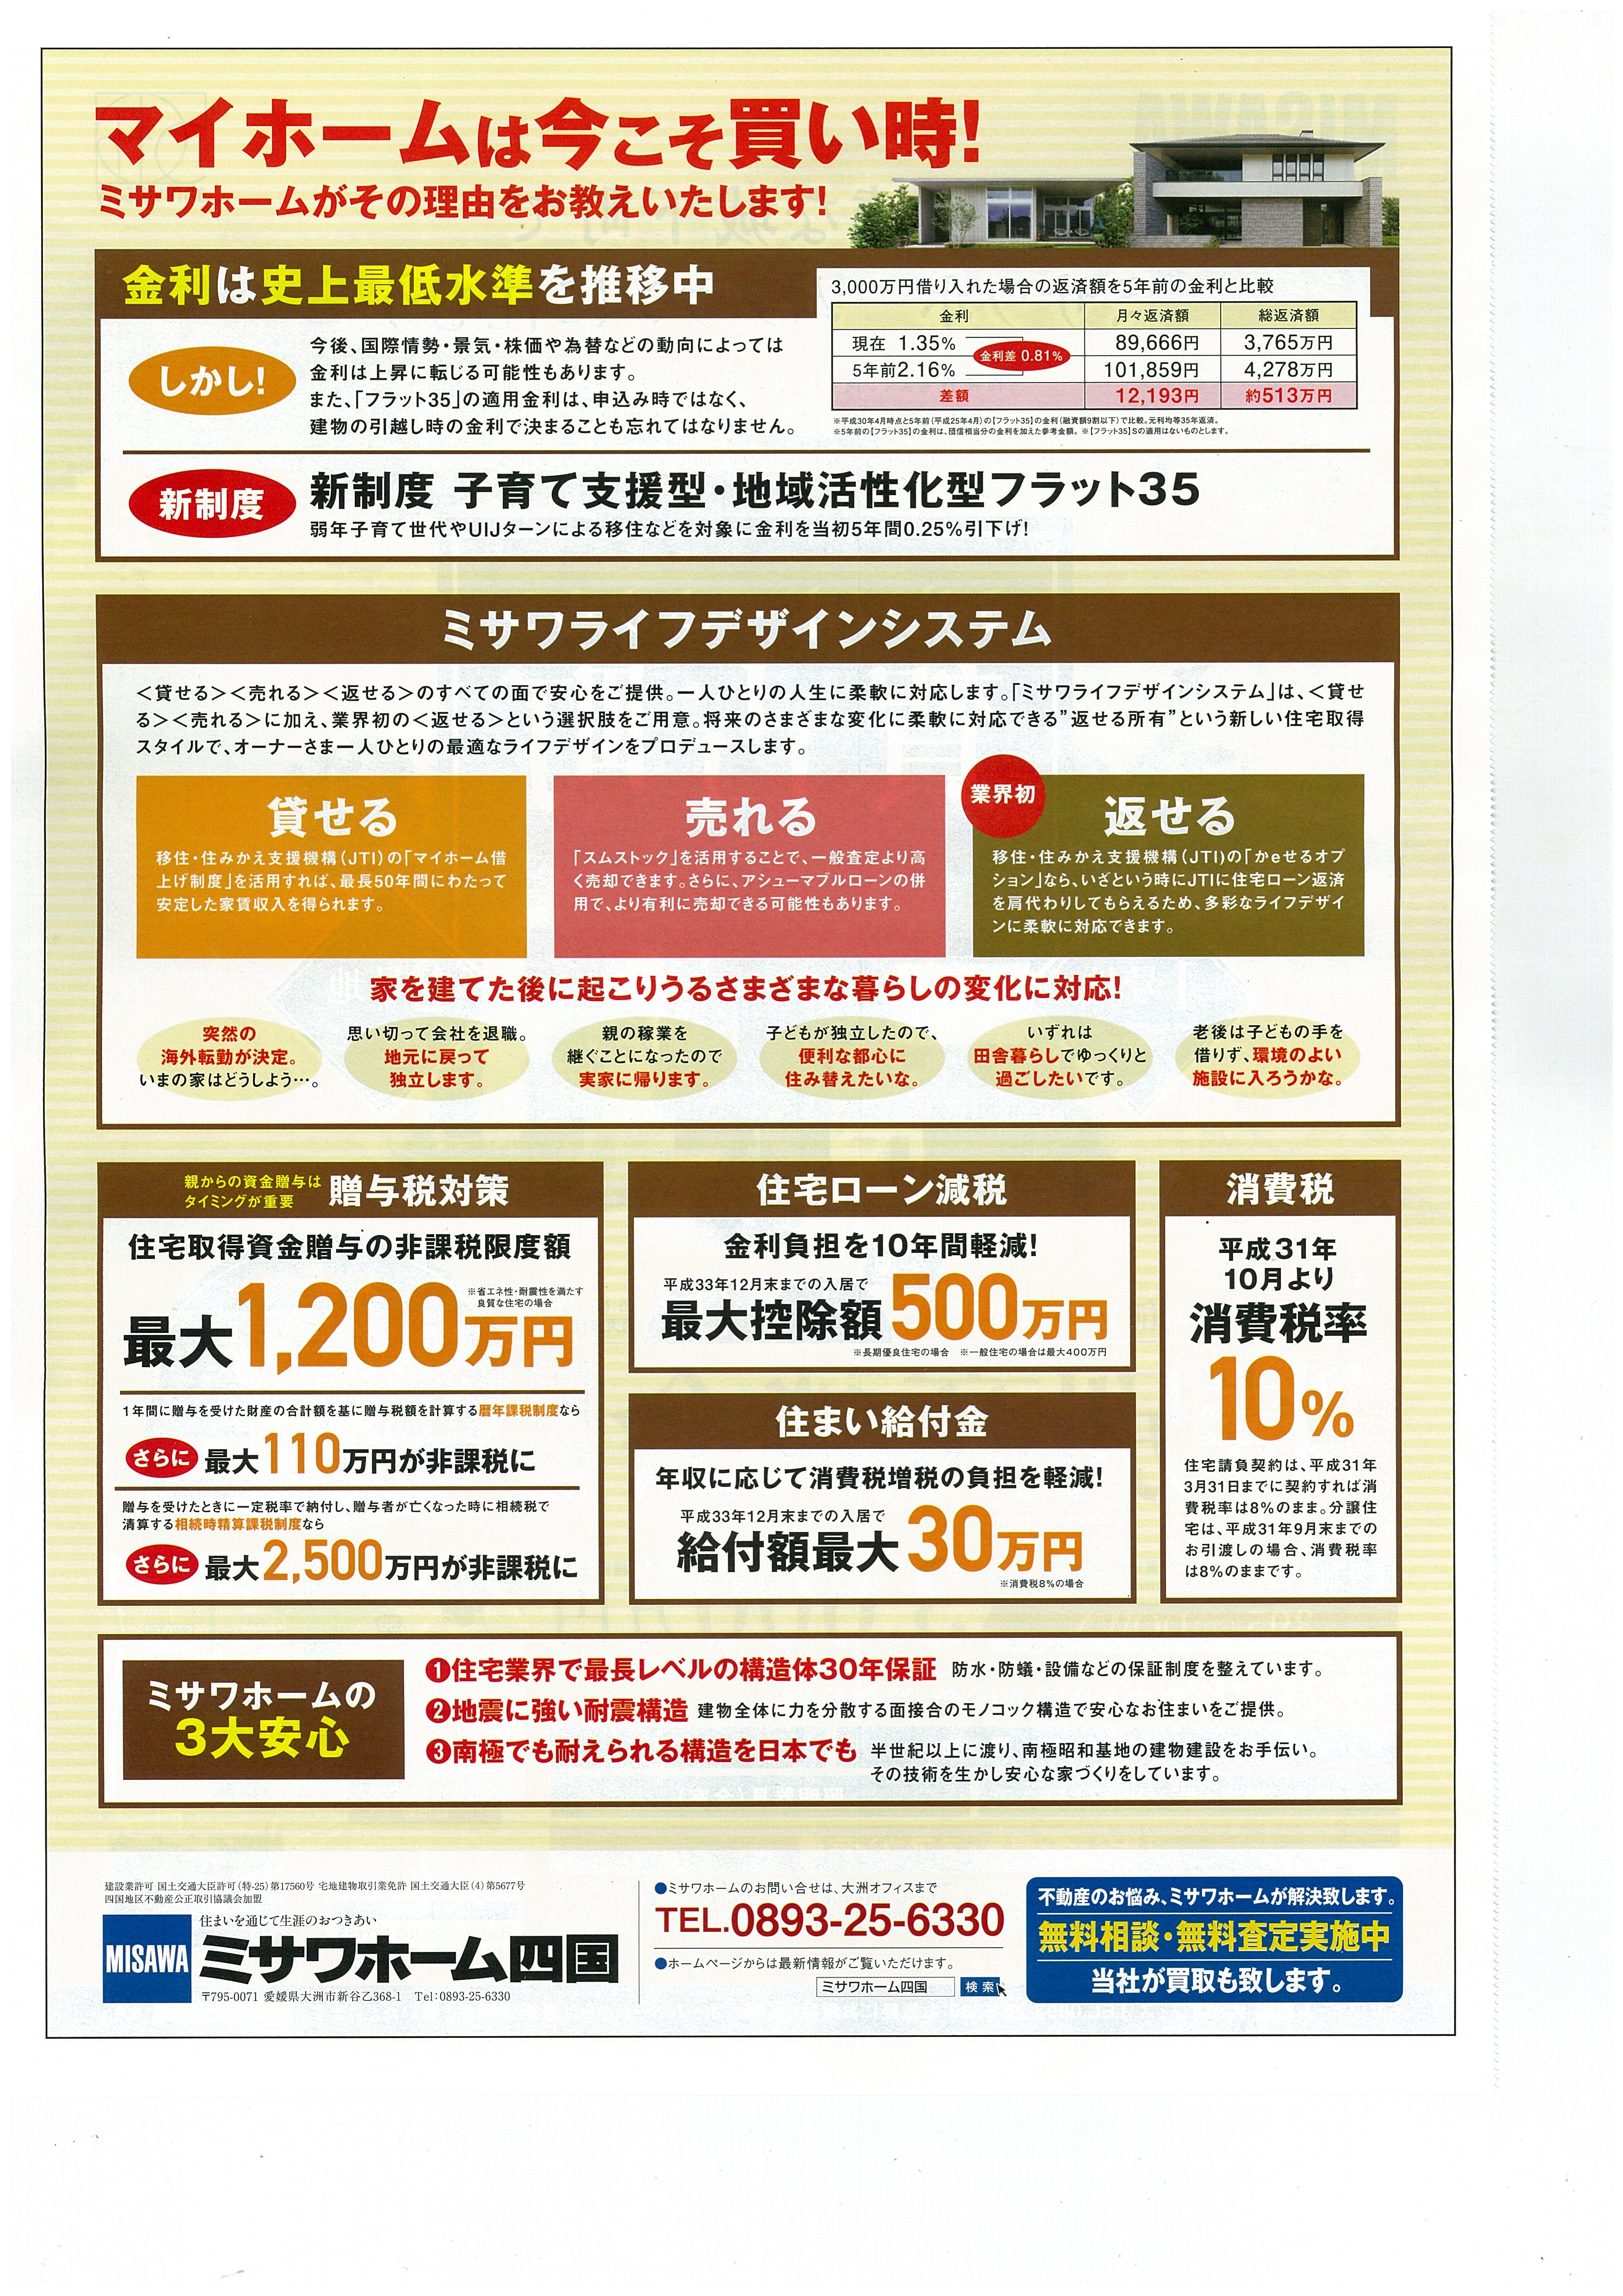 http://shikoku.misawa.co.jp/br_oosu/%E8%B3%80%E5%8F%A4%E7%94%BA%E8%A3%8F.jpg